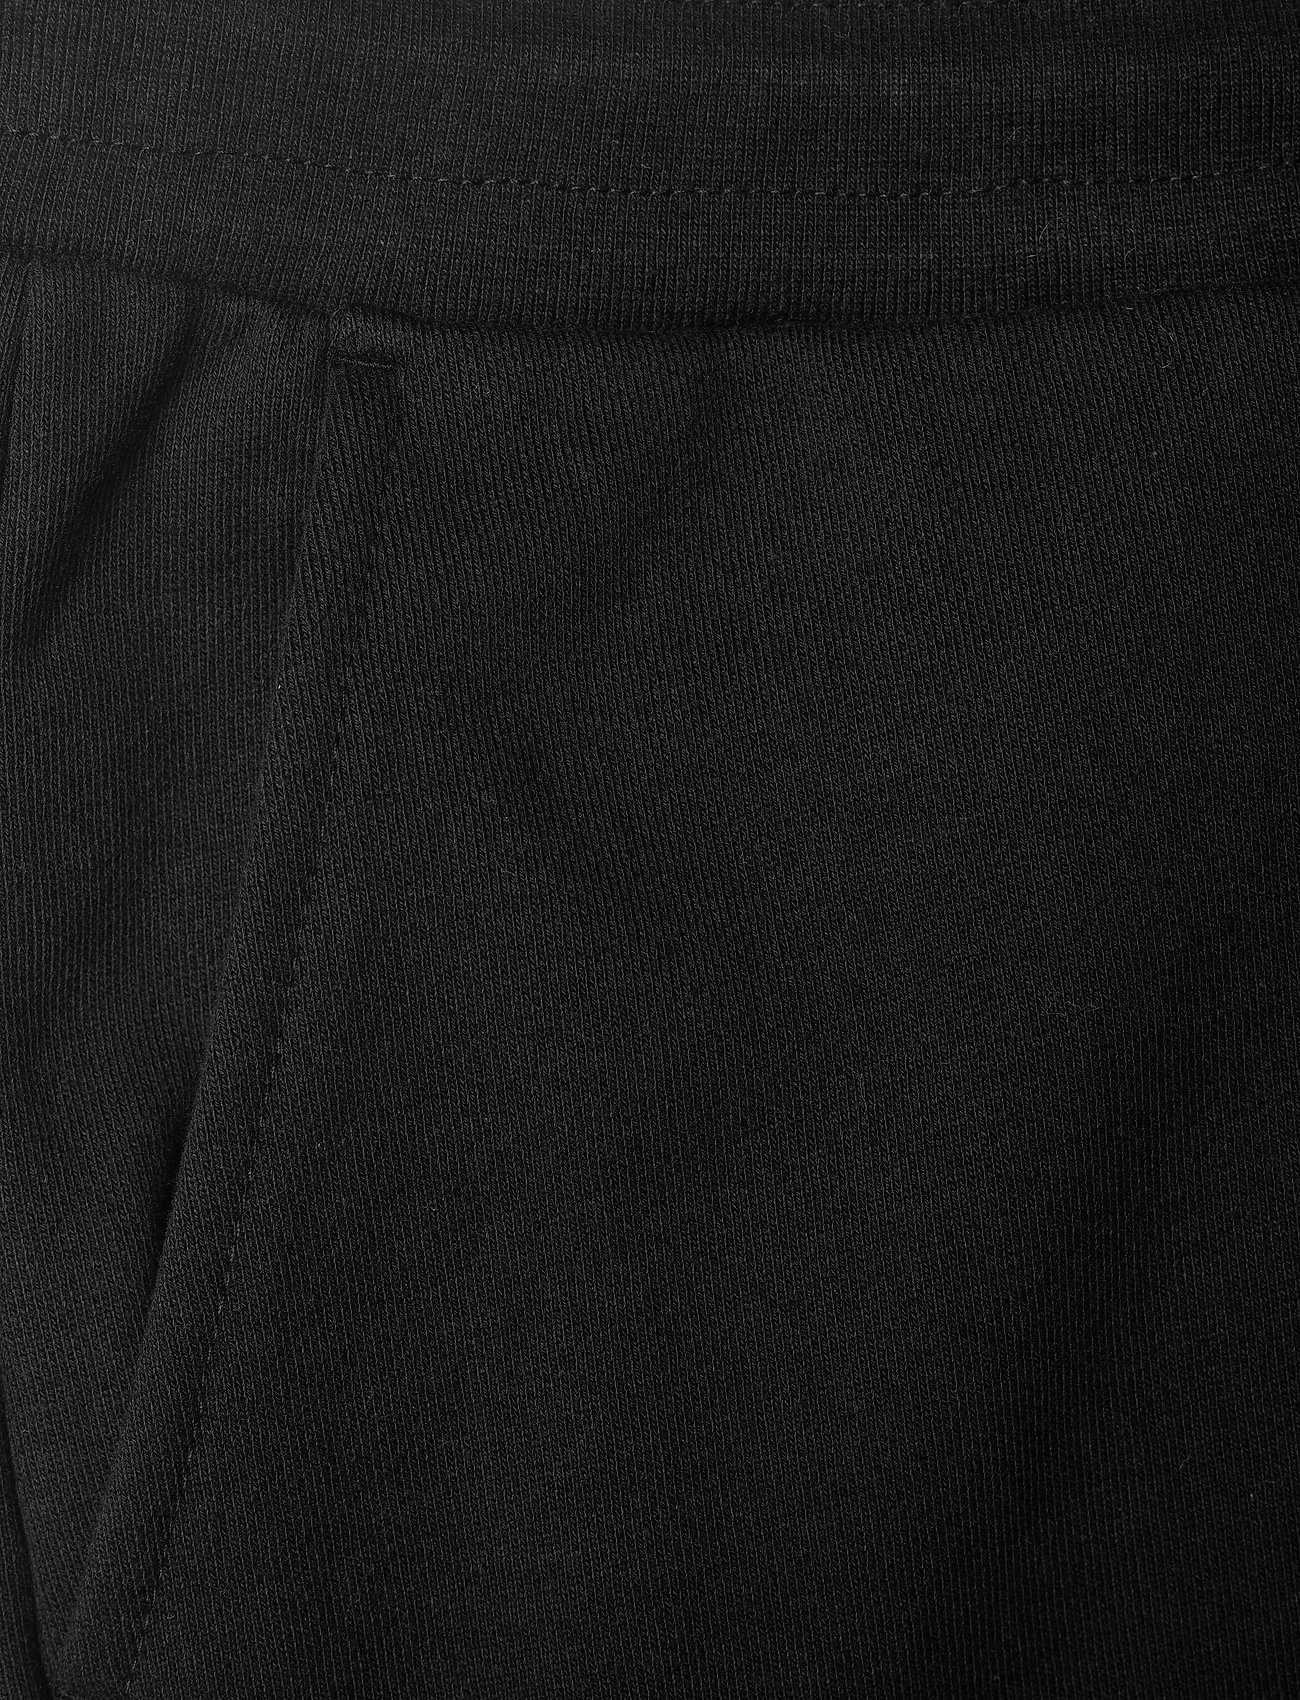 HAN Kjøbenhavn - Sweat shorts - basic-hemden - black logo - 2